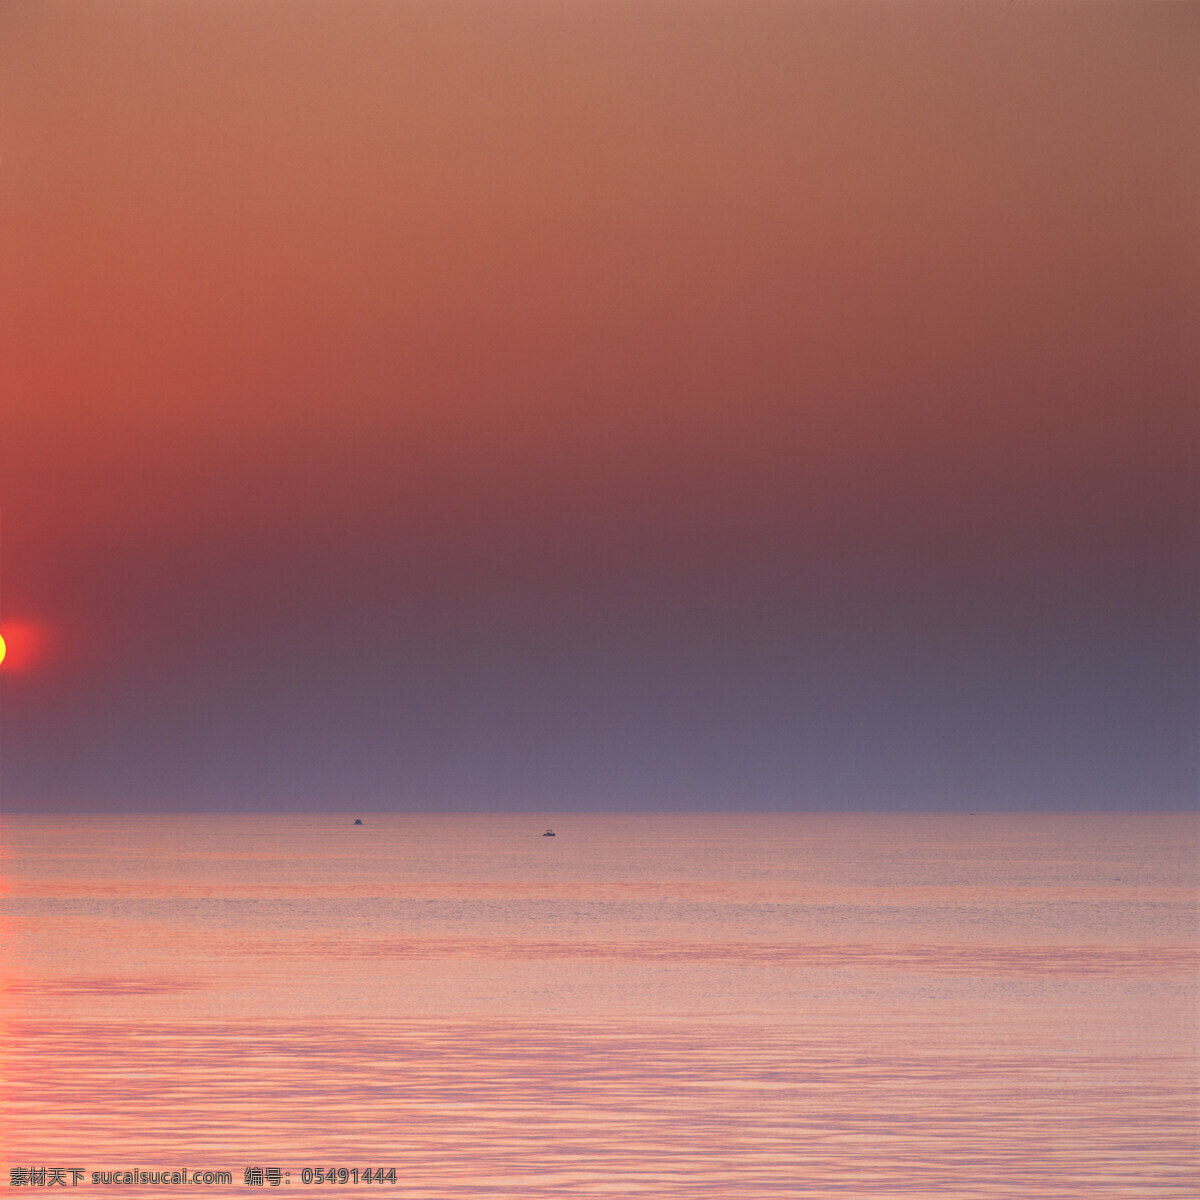 黄昏 湖面 自然景观 景色 景光 夕阳 傍晚 蓝天 湖水 高清图片 大海图片 风景图片